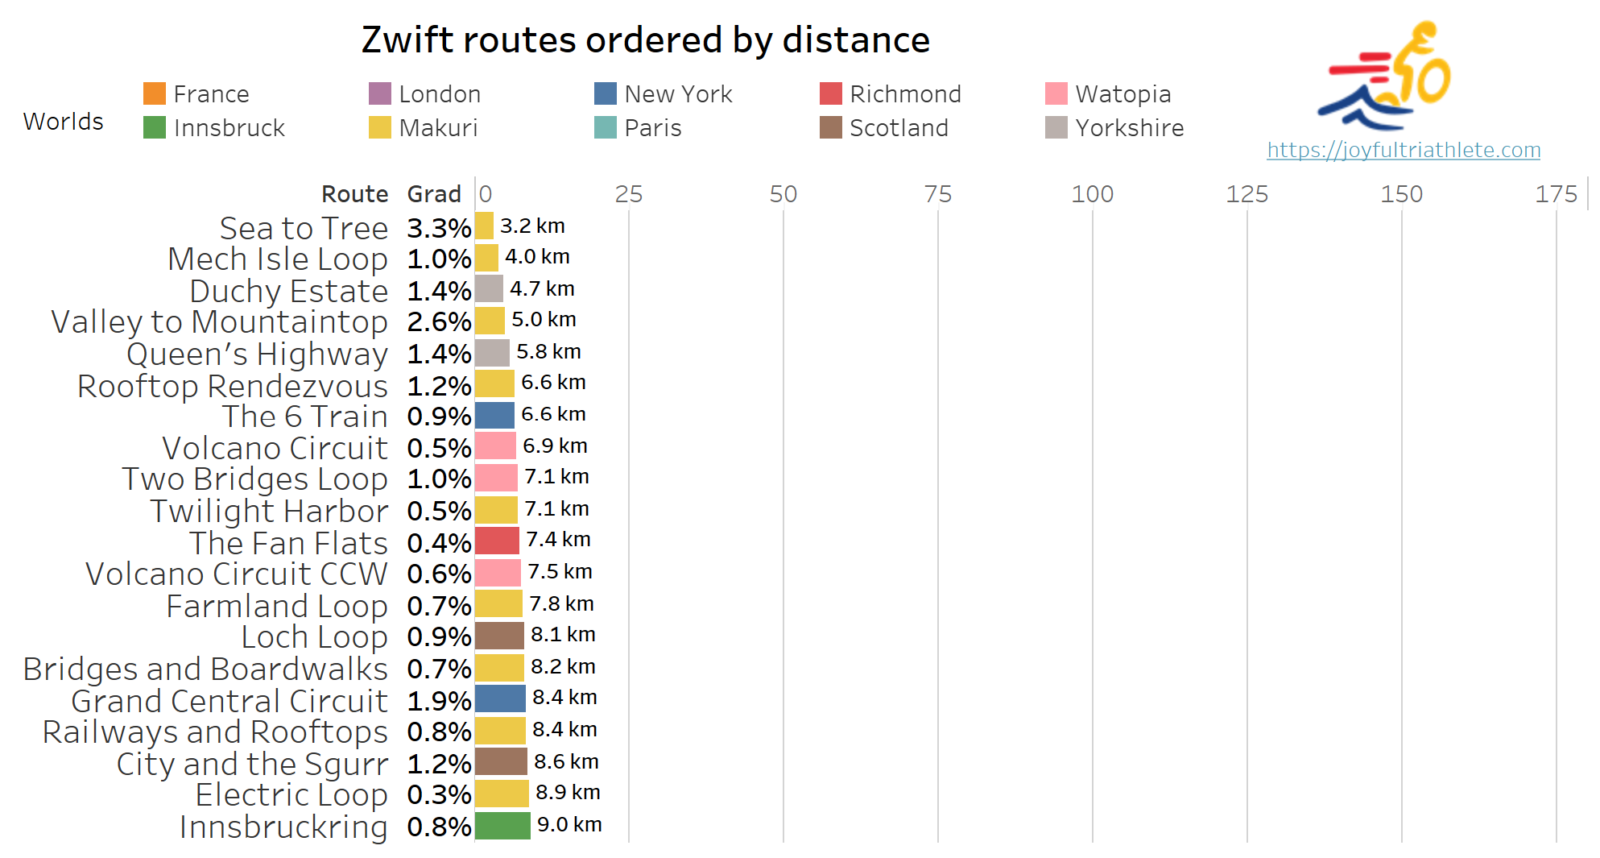 zwift shortest route top 20